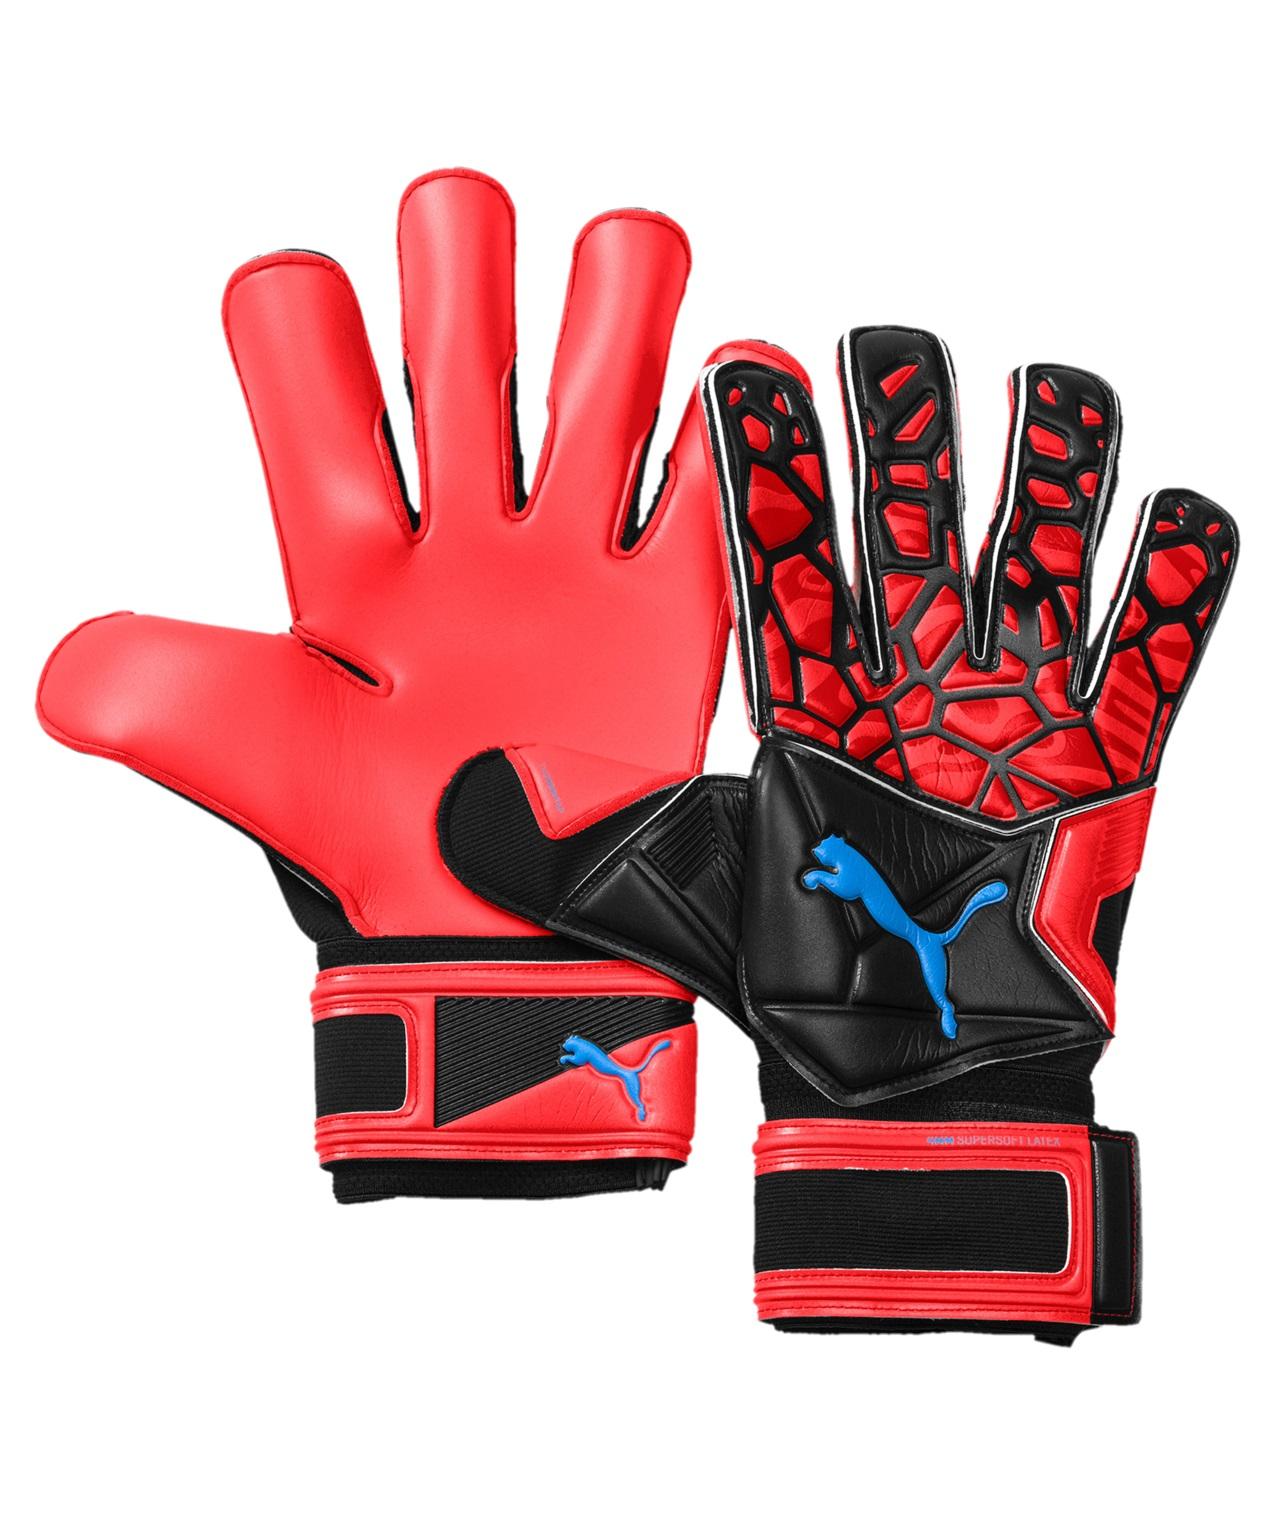  Puma Future Grip 19.2 Goalkeeper Glove